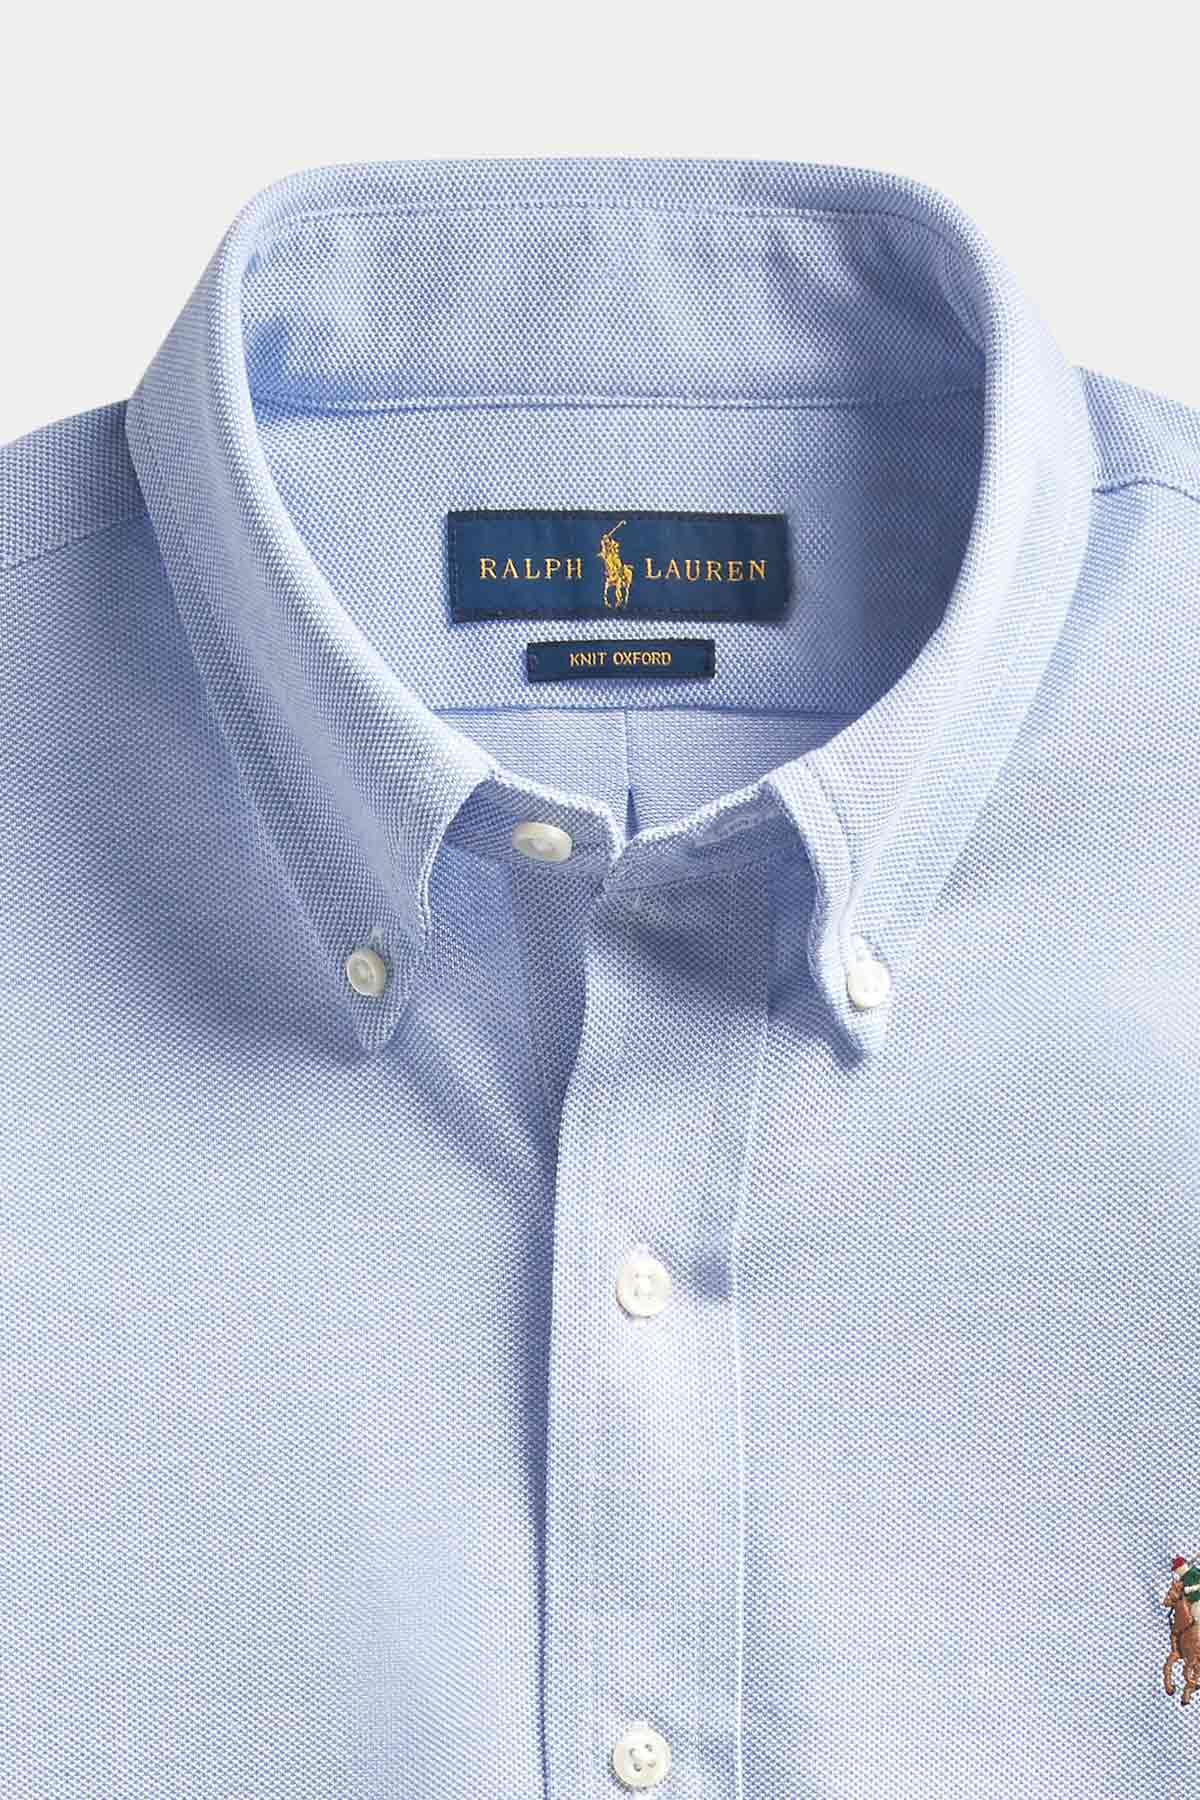 Polo Ralph Lauren Knit Oxford Fit Gömlek-Libas Trendy Fashion Store